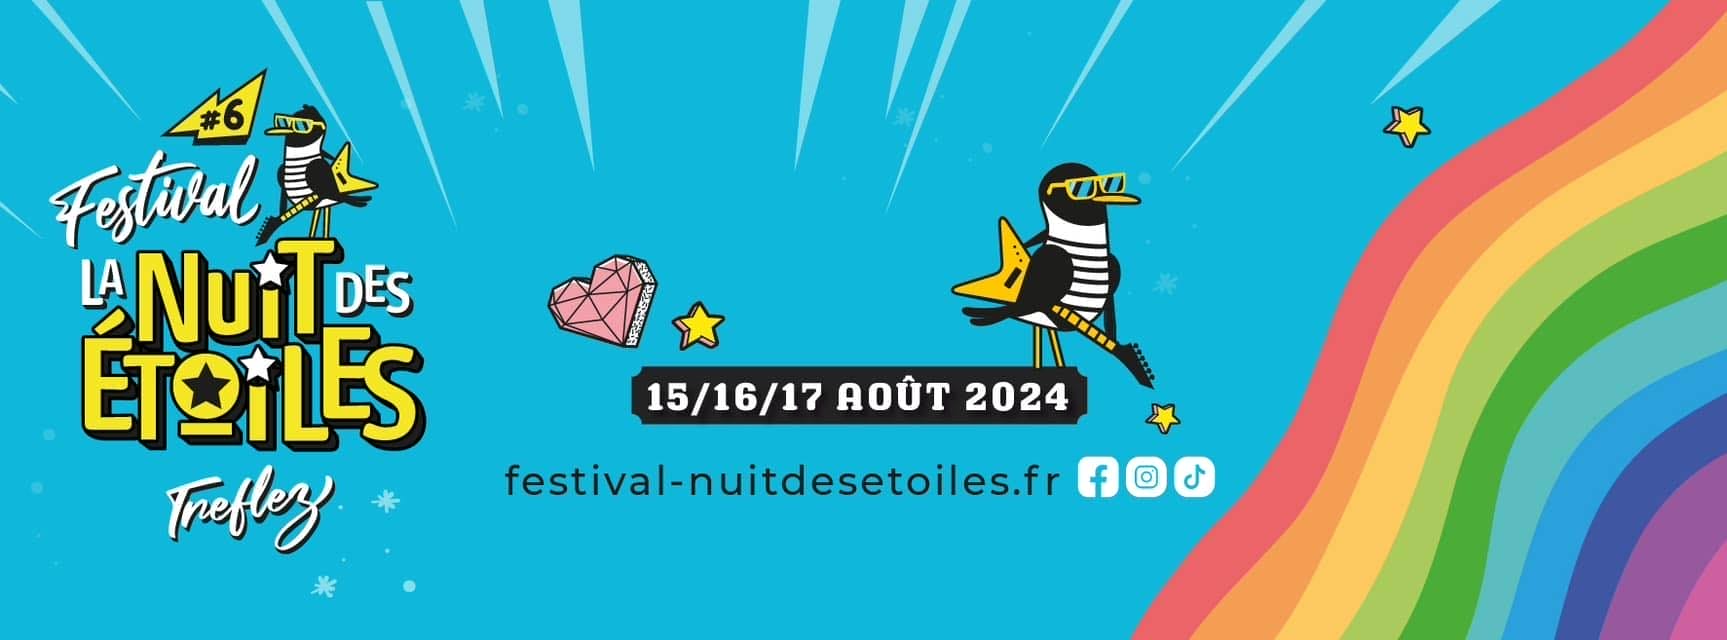 Festival La nuit des étoiles, 15 au 17 août 2024 à Tréflez (29)